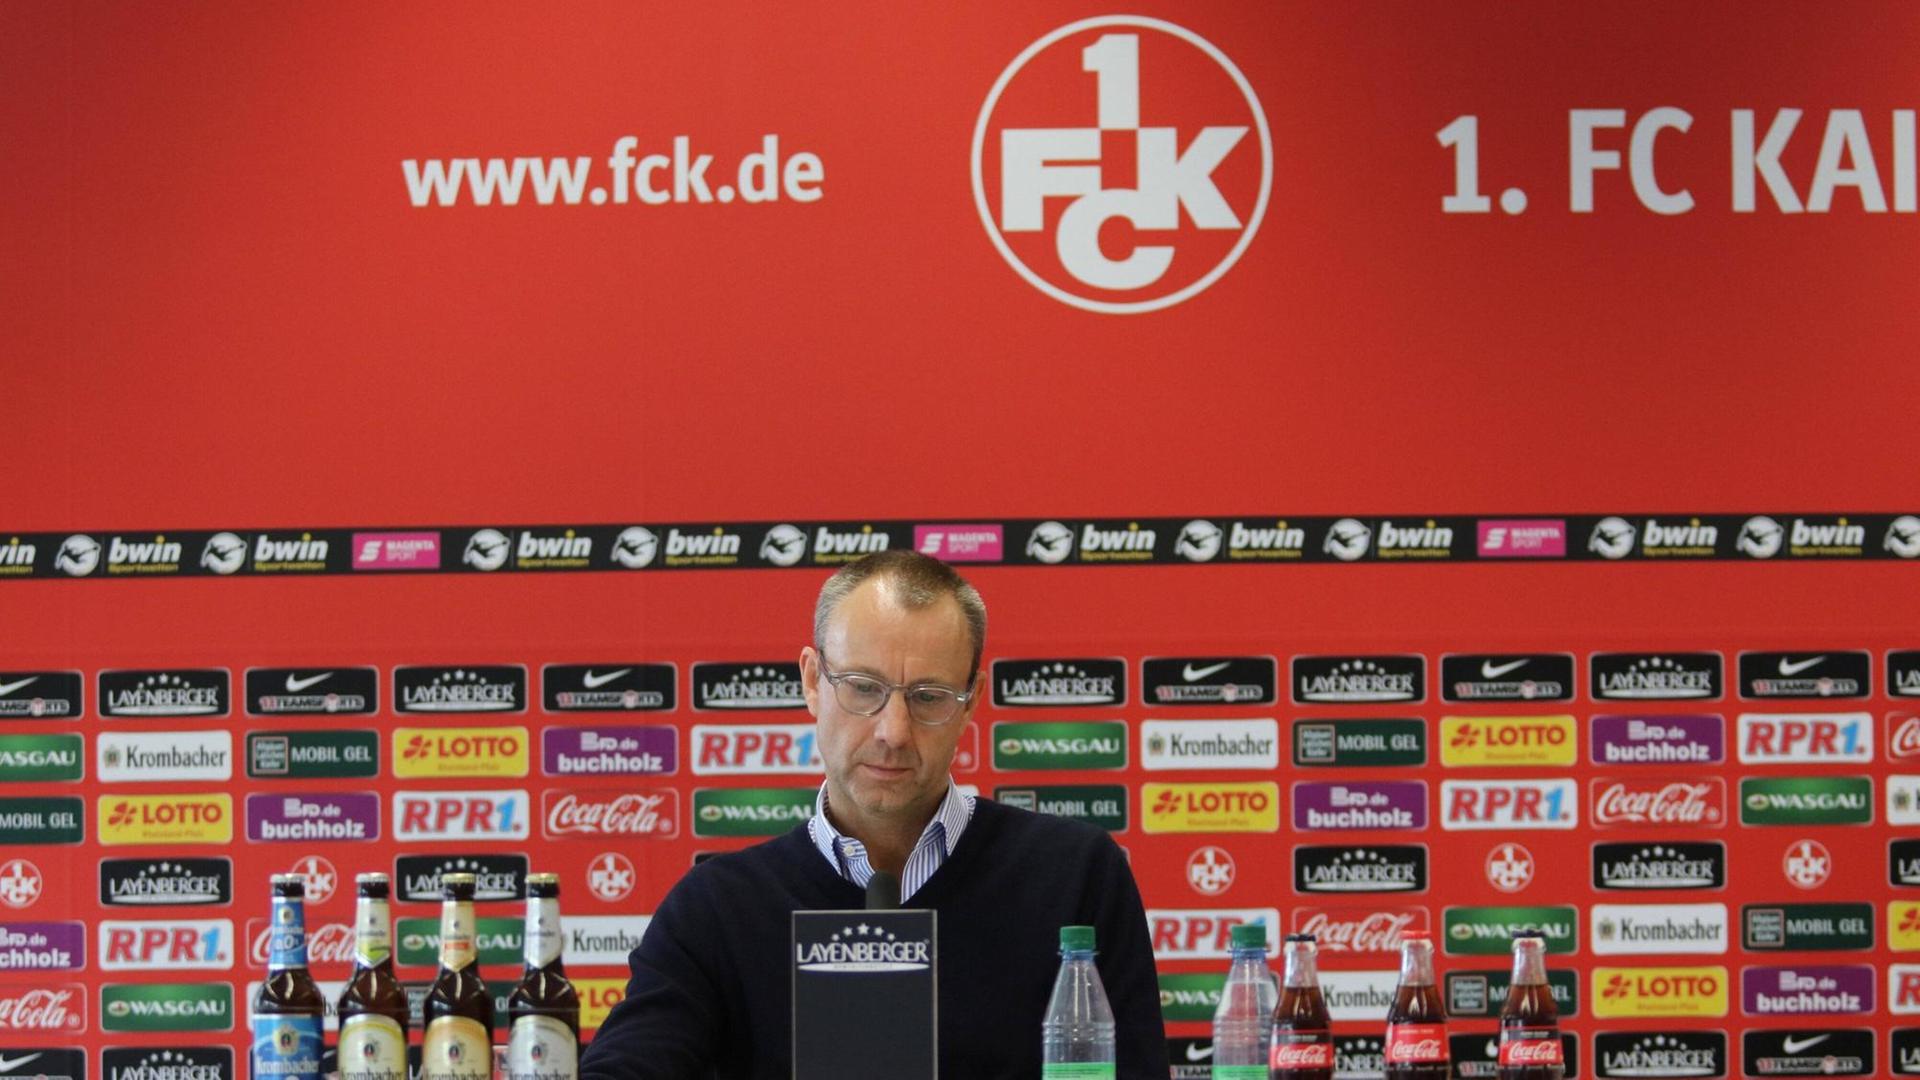 Soeren Oliver Voigt, Geschäftsführer 1. FC Kaiserslautern GmbH & Co. KGaA, bei der Pressekonferenz zum Insolvenzverfahren am 15.06.2020.